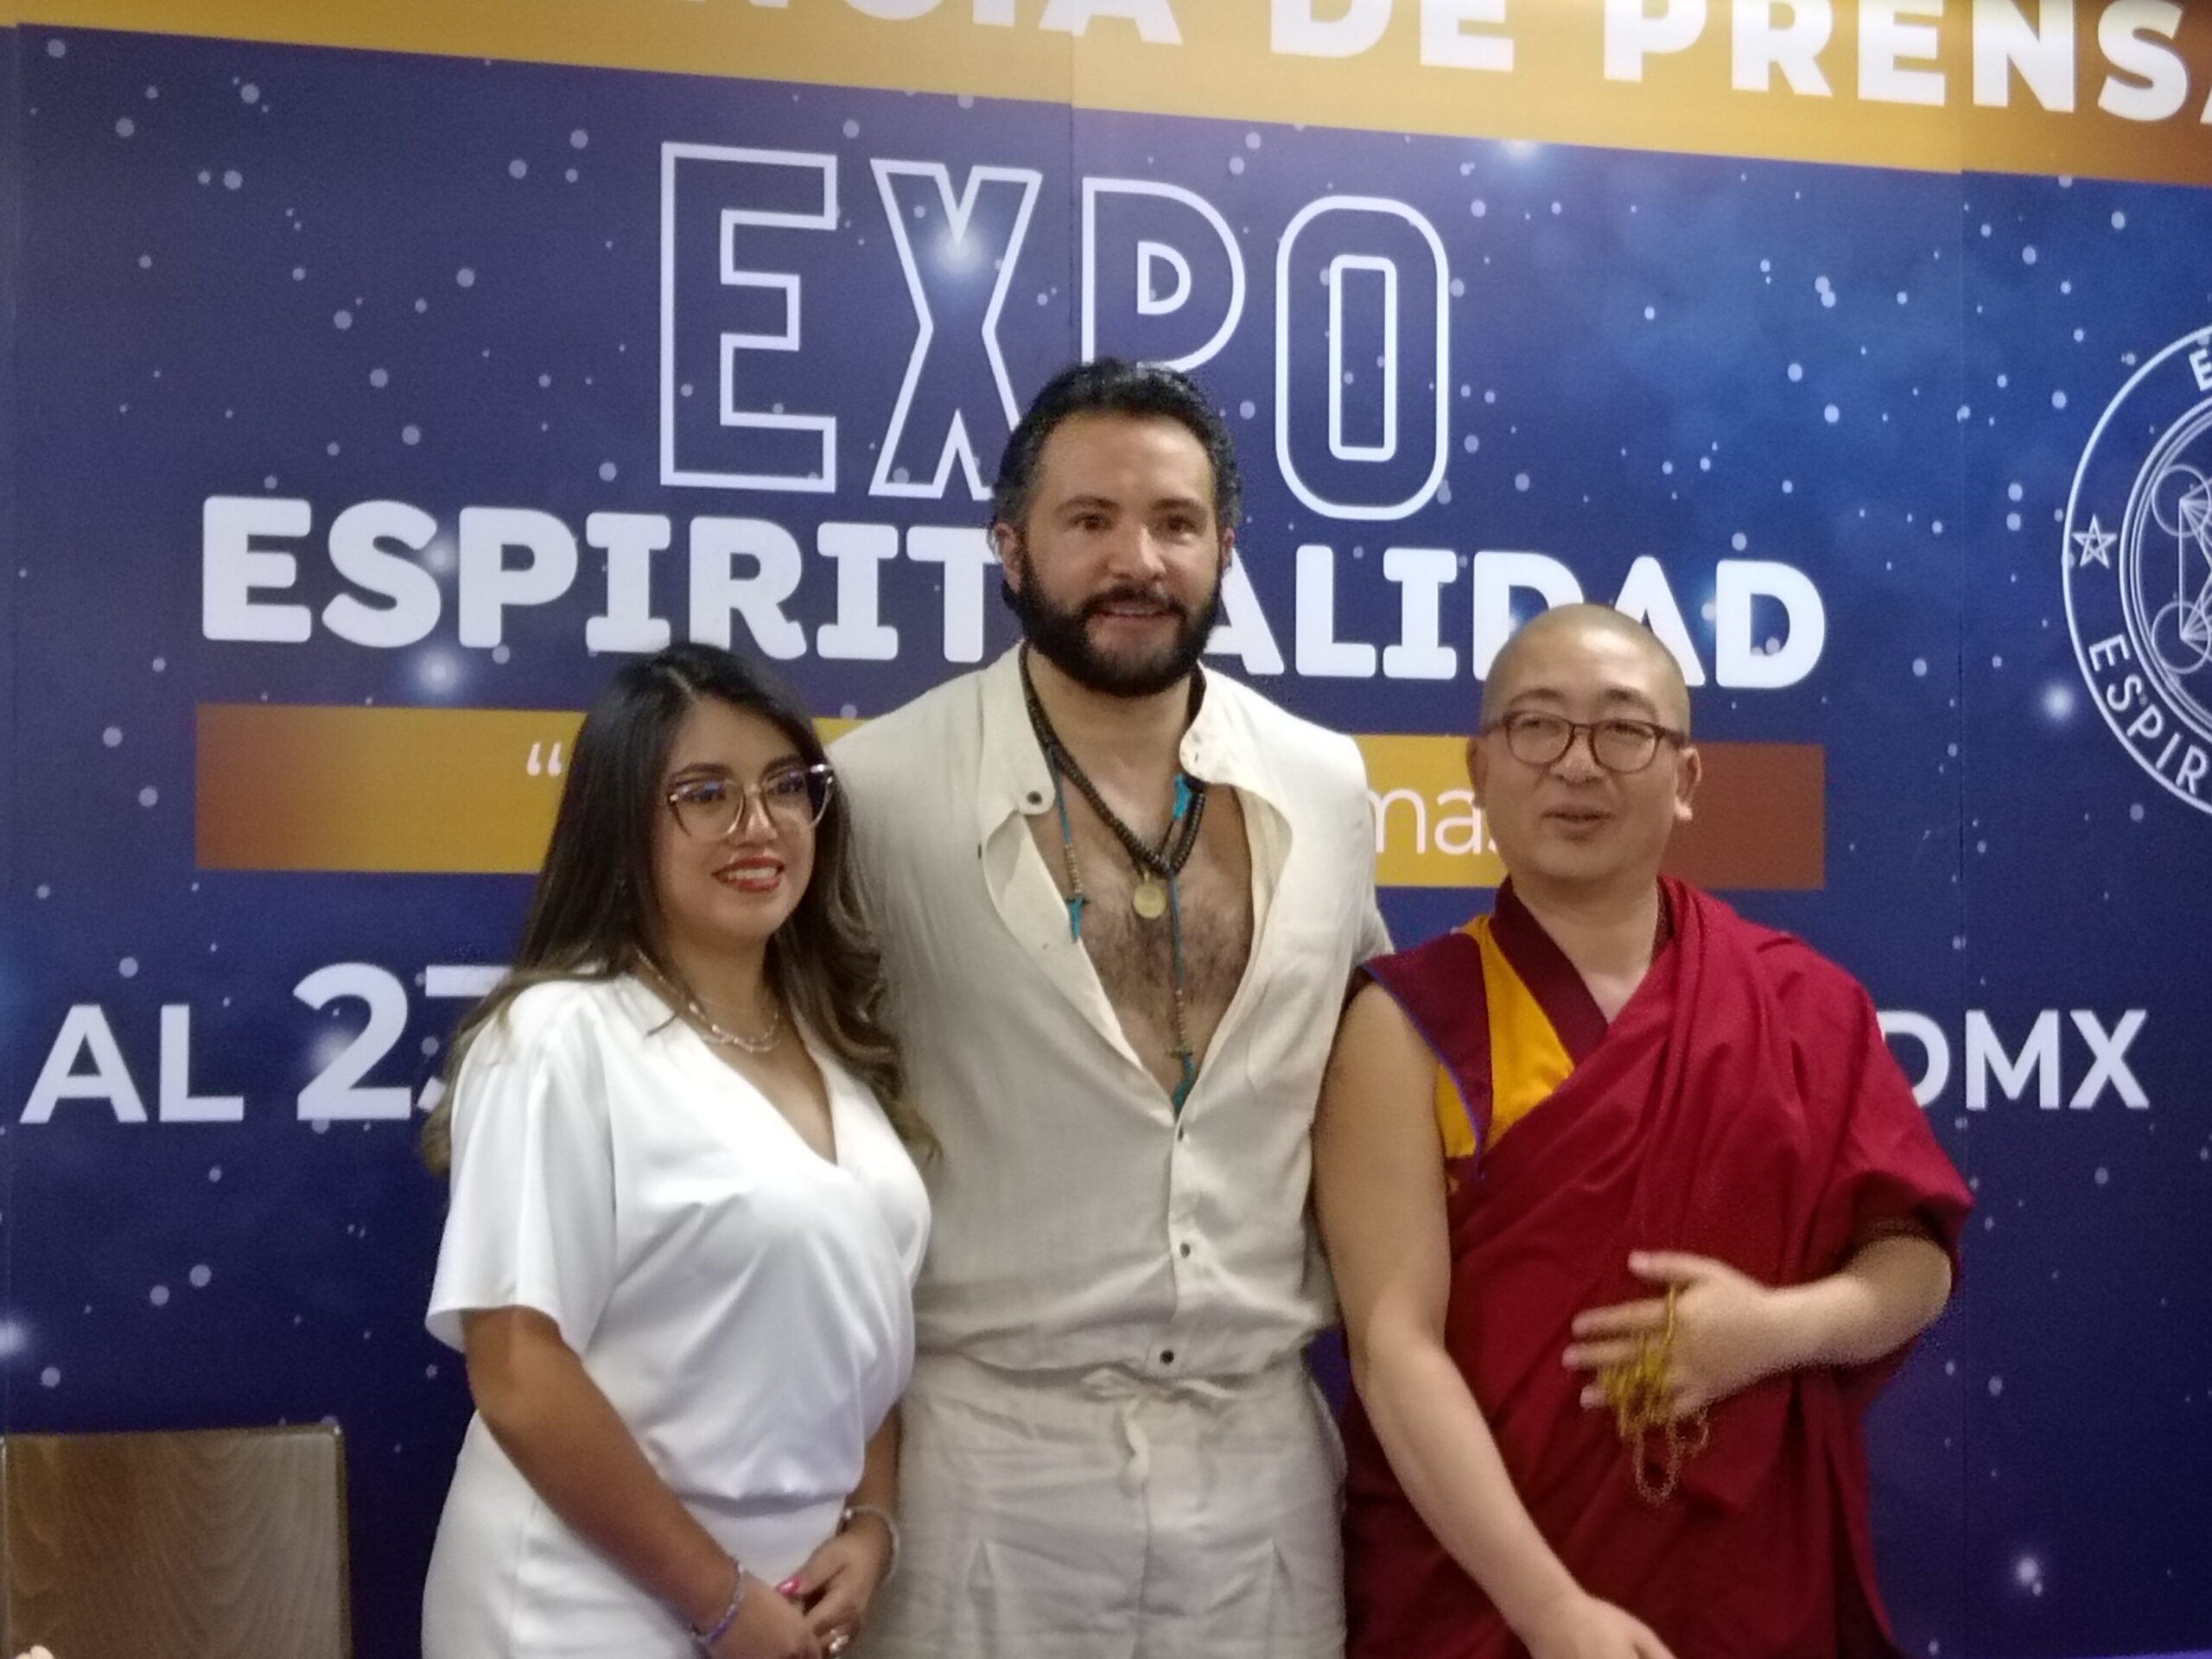 Expo Espiritualidad CDMX generará más de 10 mil empleos directos